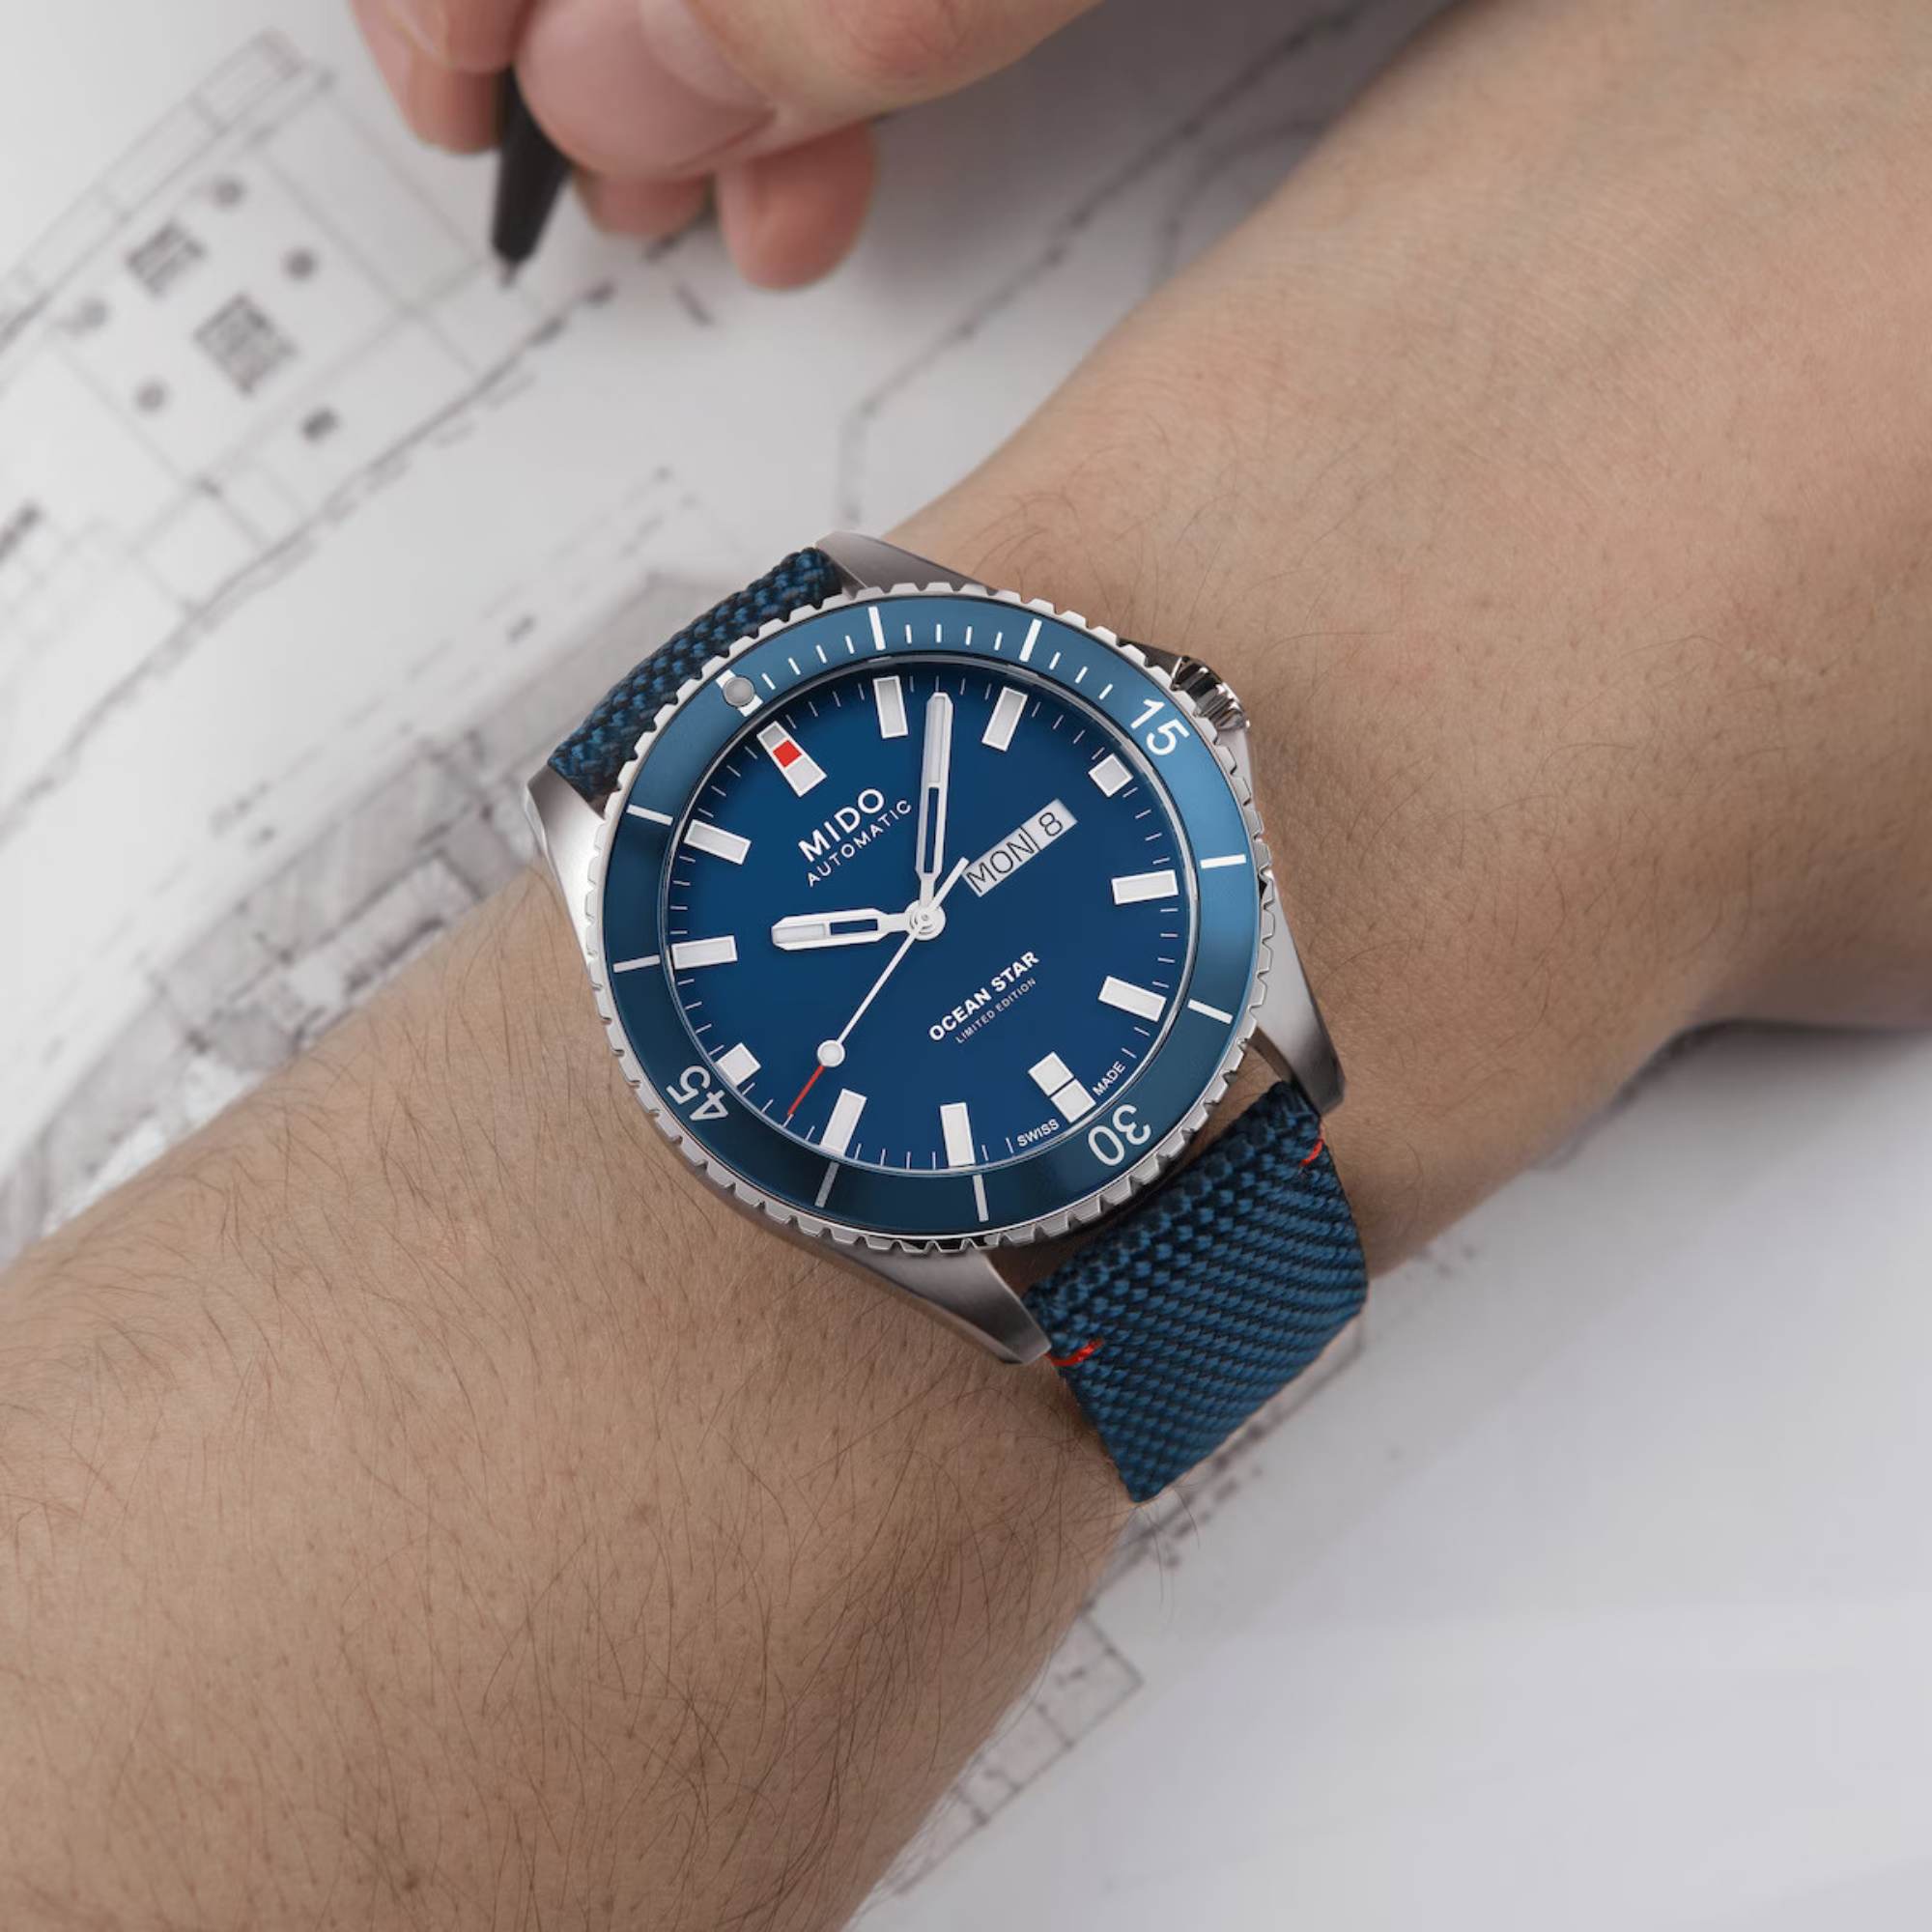 Relógio Mido Ocean Star IBA Limited Edition Automático Azul M026.430.17.041.01